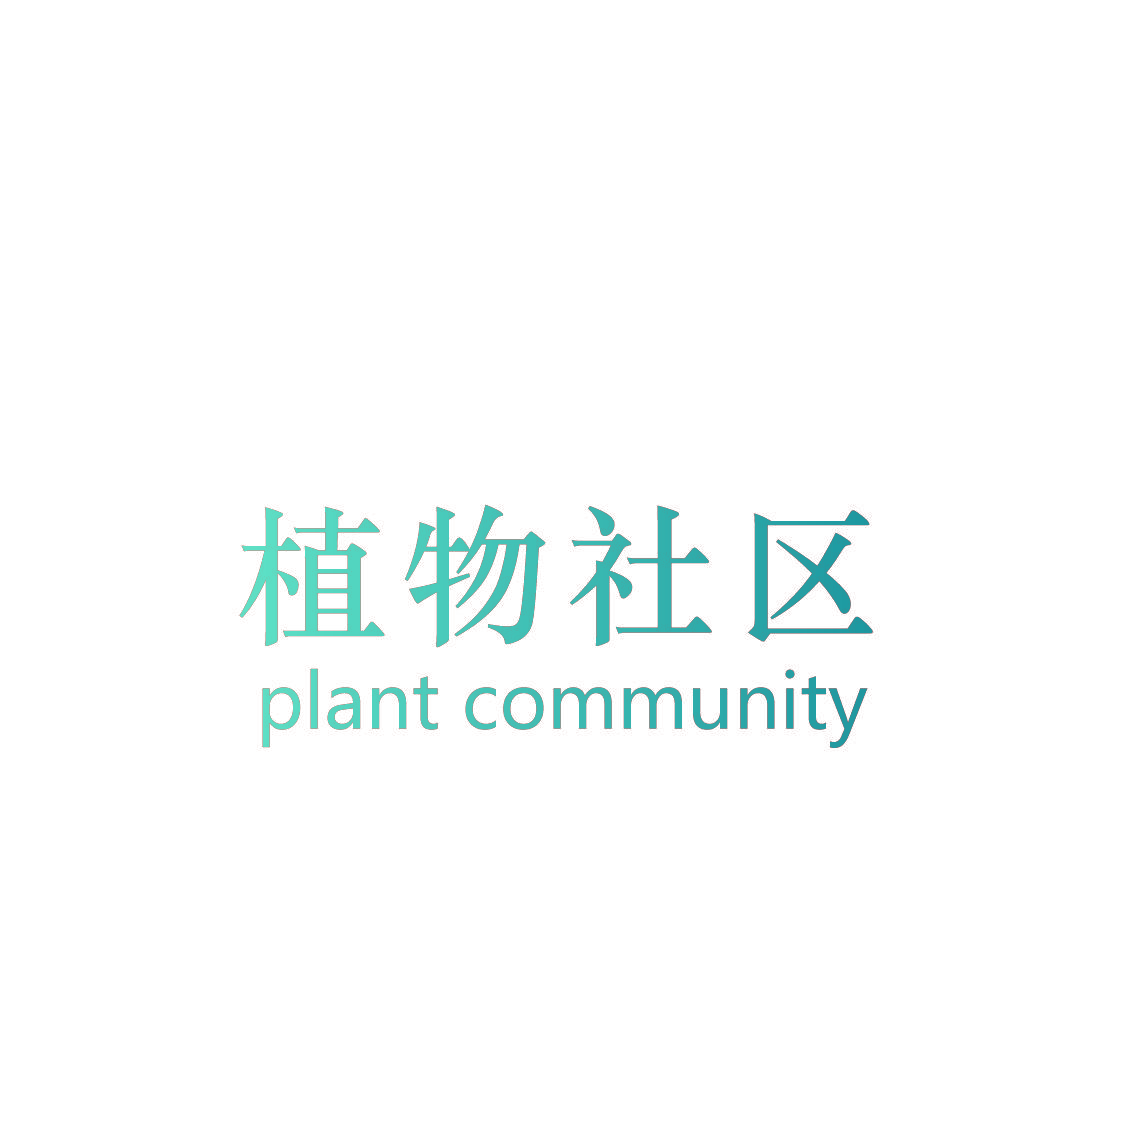 植物社区 PLANT COMMUNITY